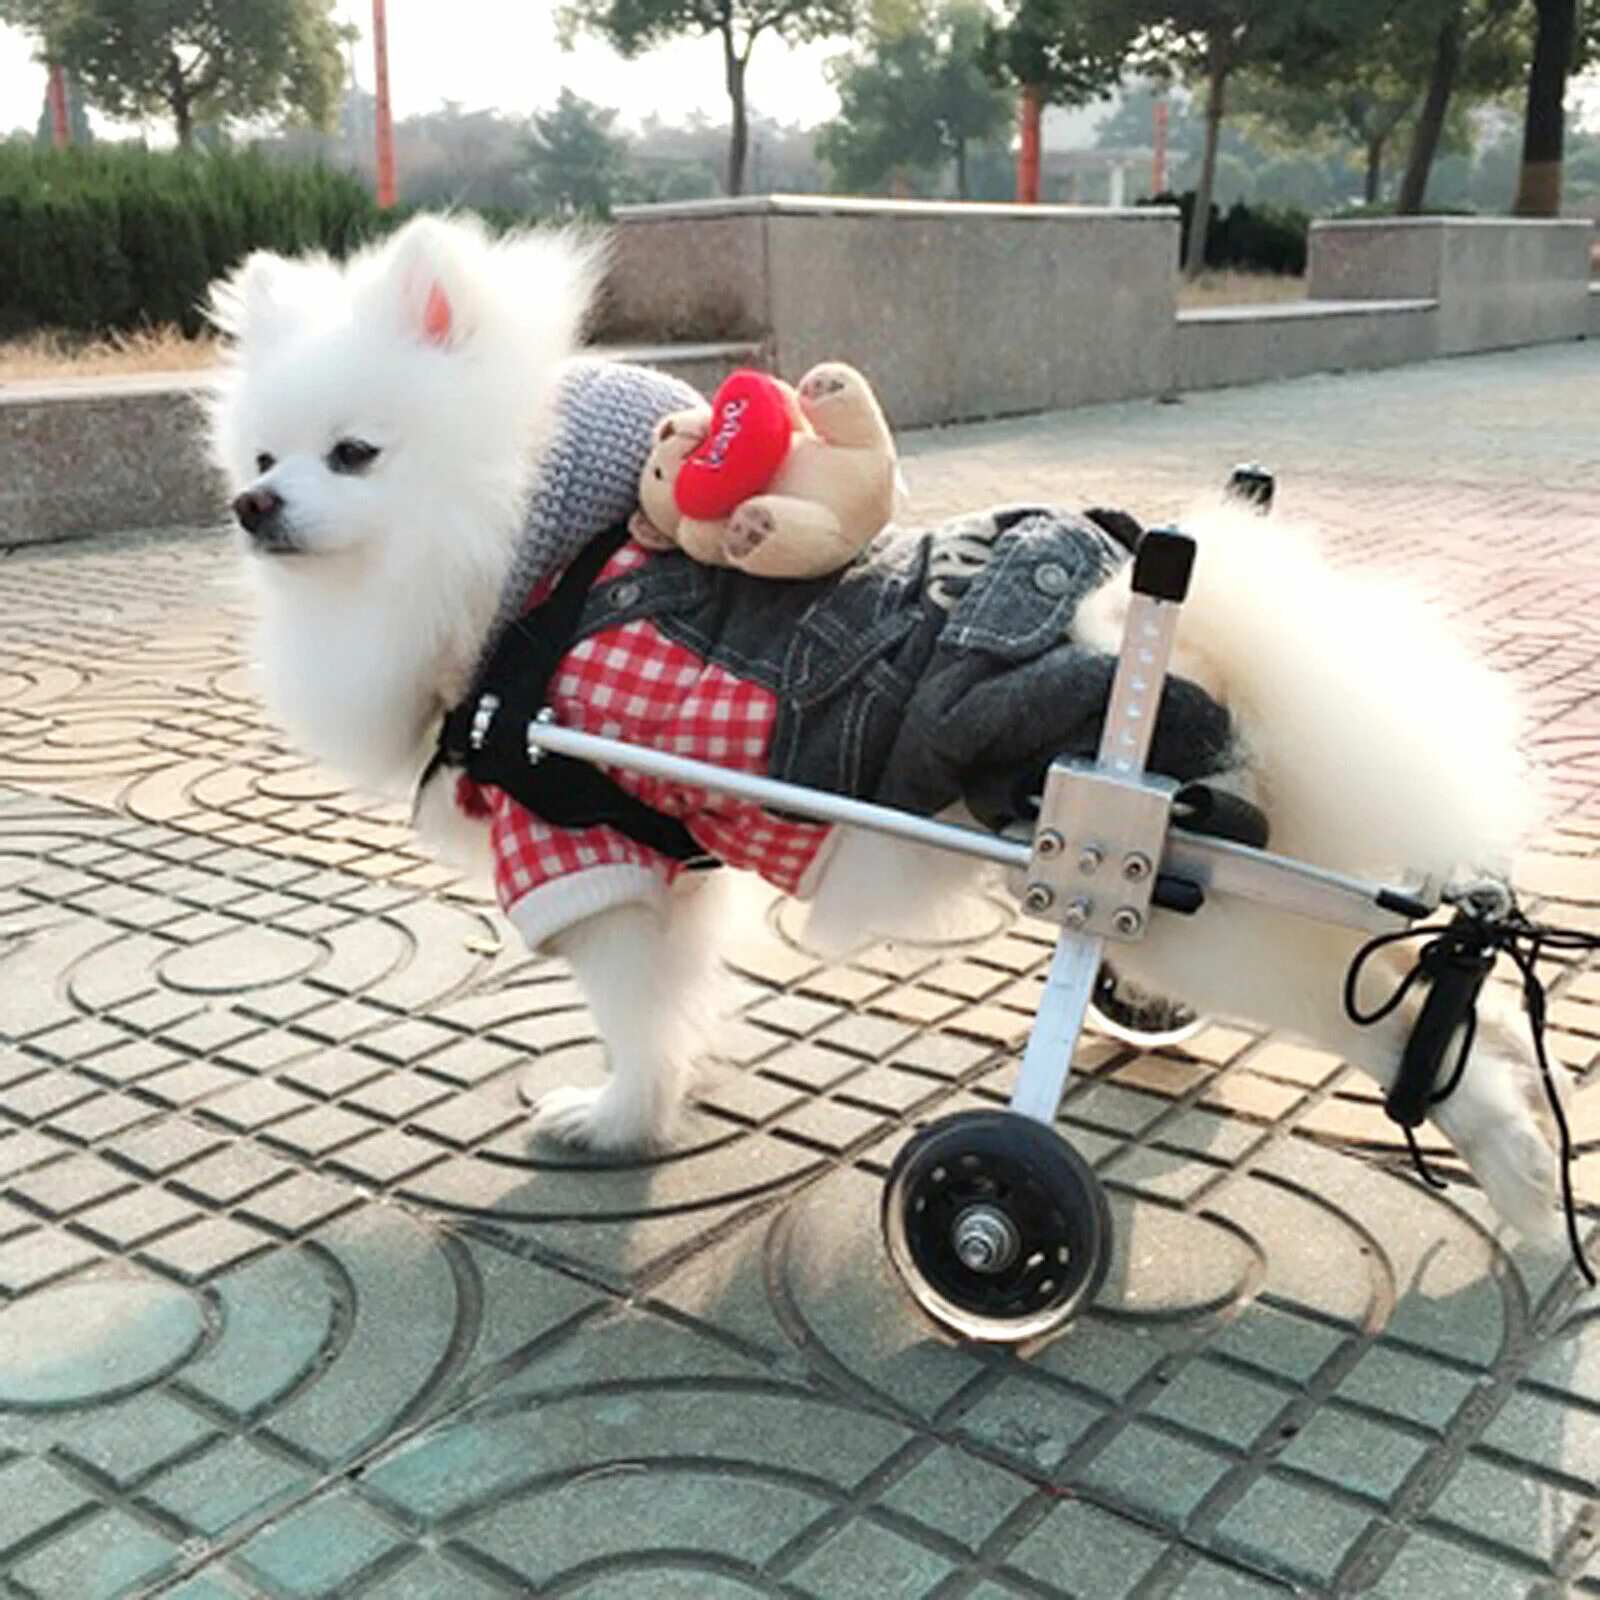 Инвалидная коляска для собак Walkin Wheels. Инвалидные коляски Dog wheelchairs. Инвалит ная коляска для собаки. Инвалидная коляска для кошек.